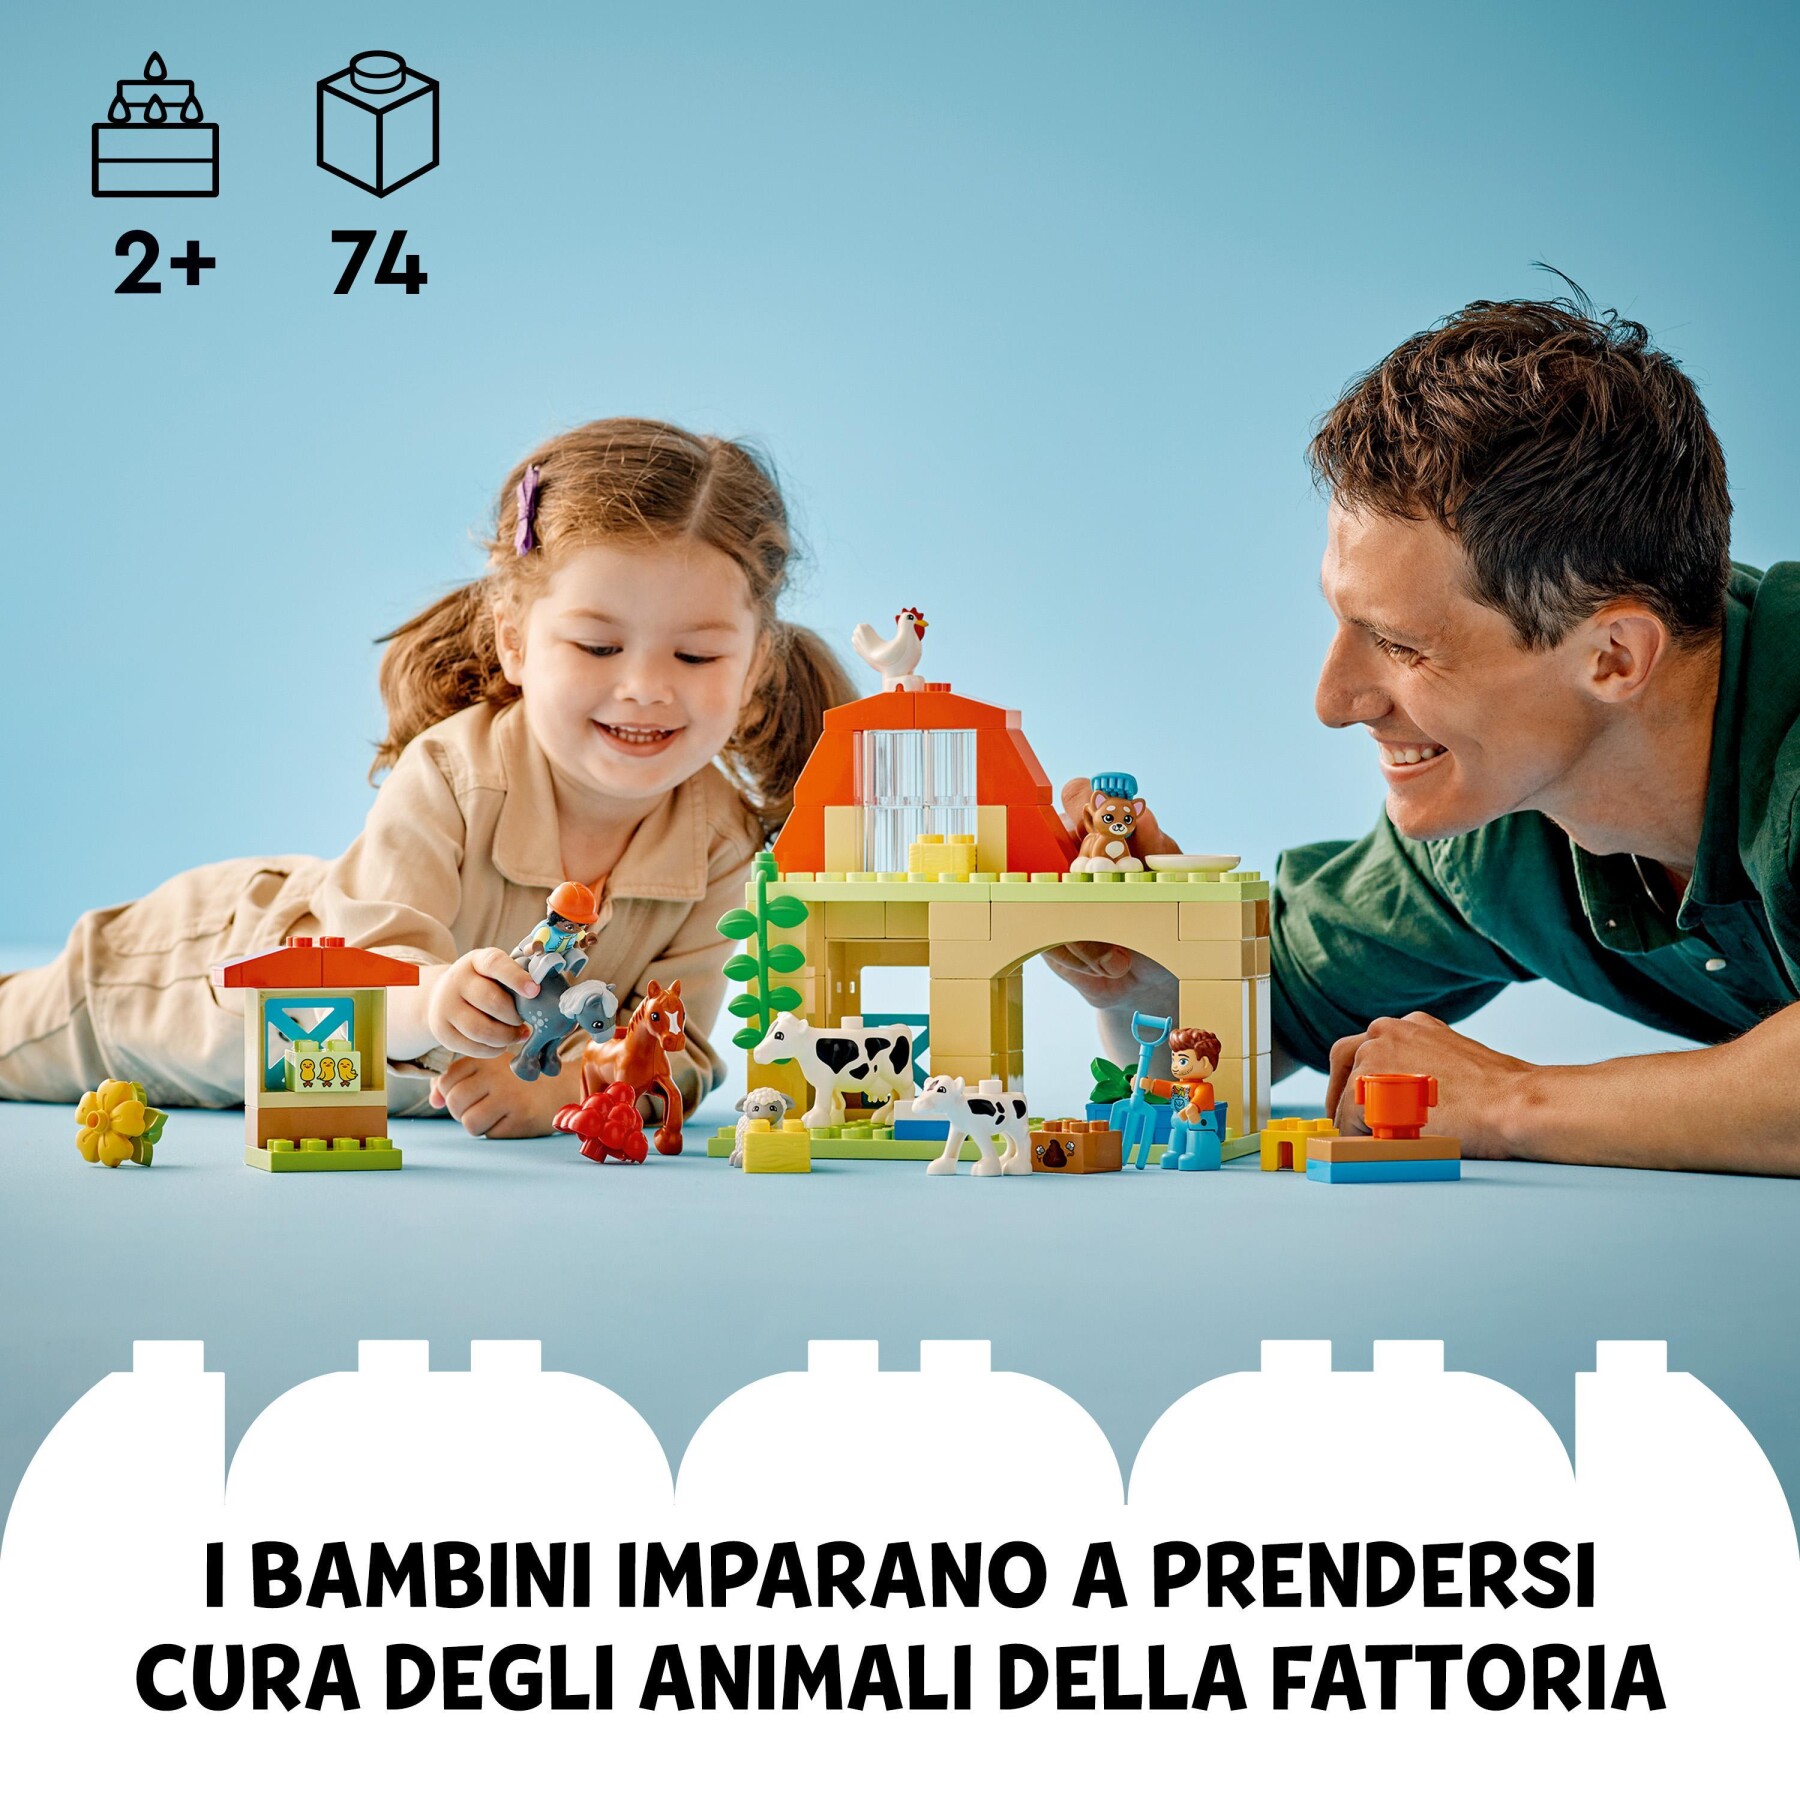 Lego duplo 10416 cura degli animali di fattoria giocattolo, gioco di ruolo educativo per bambini 2+ con figure giocattolo - LEGO DUPLO